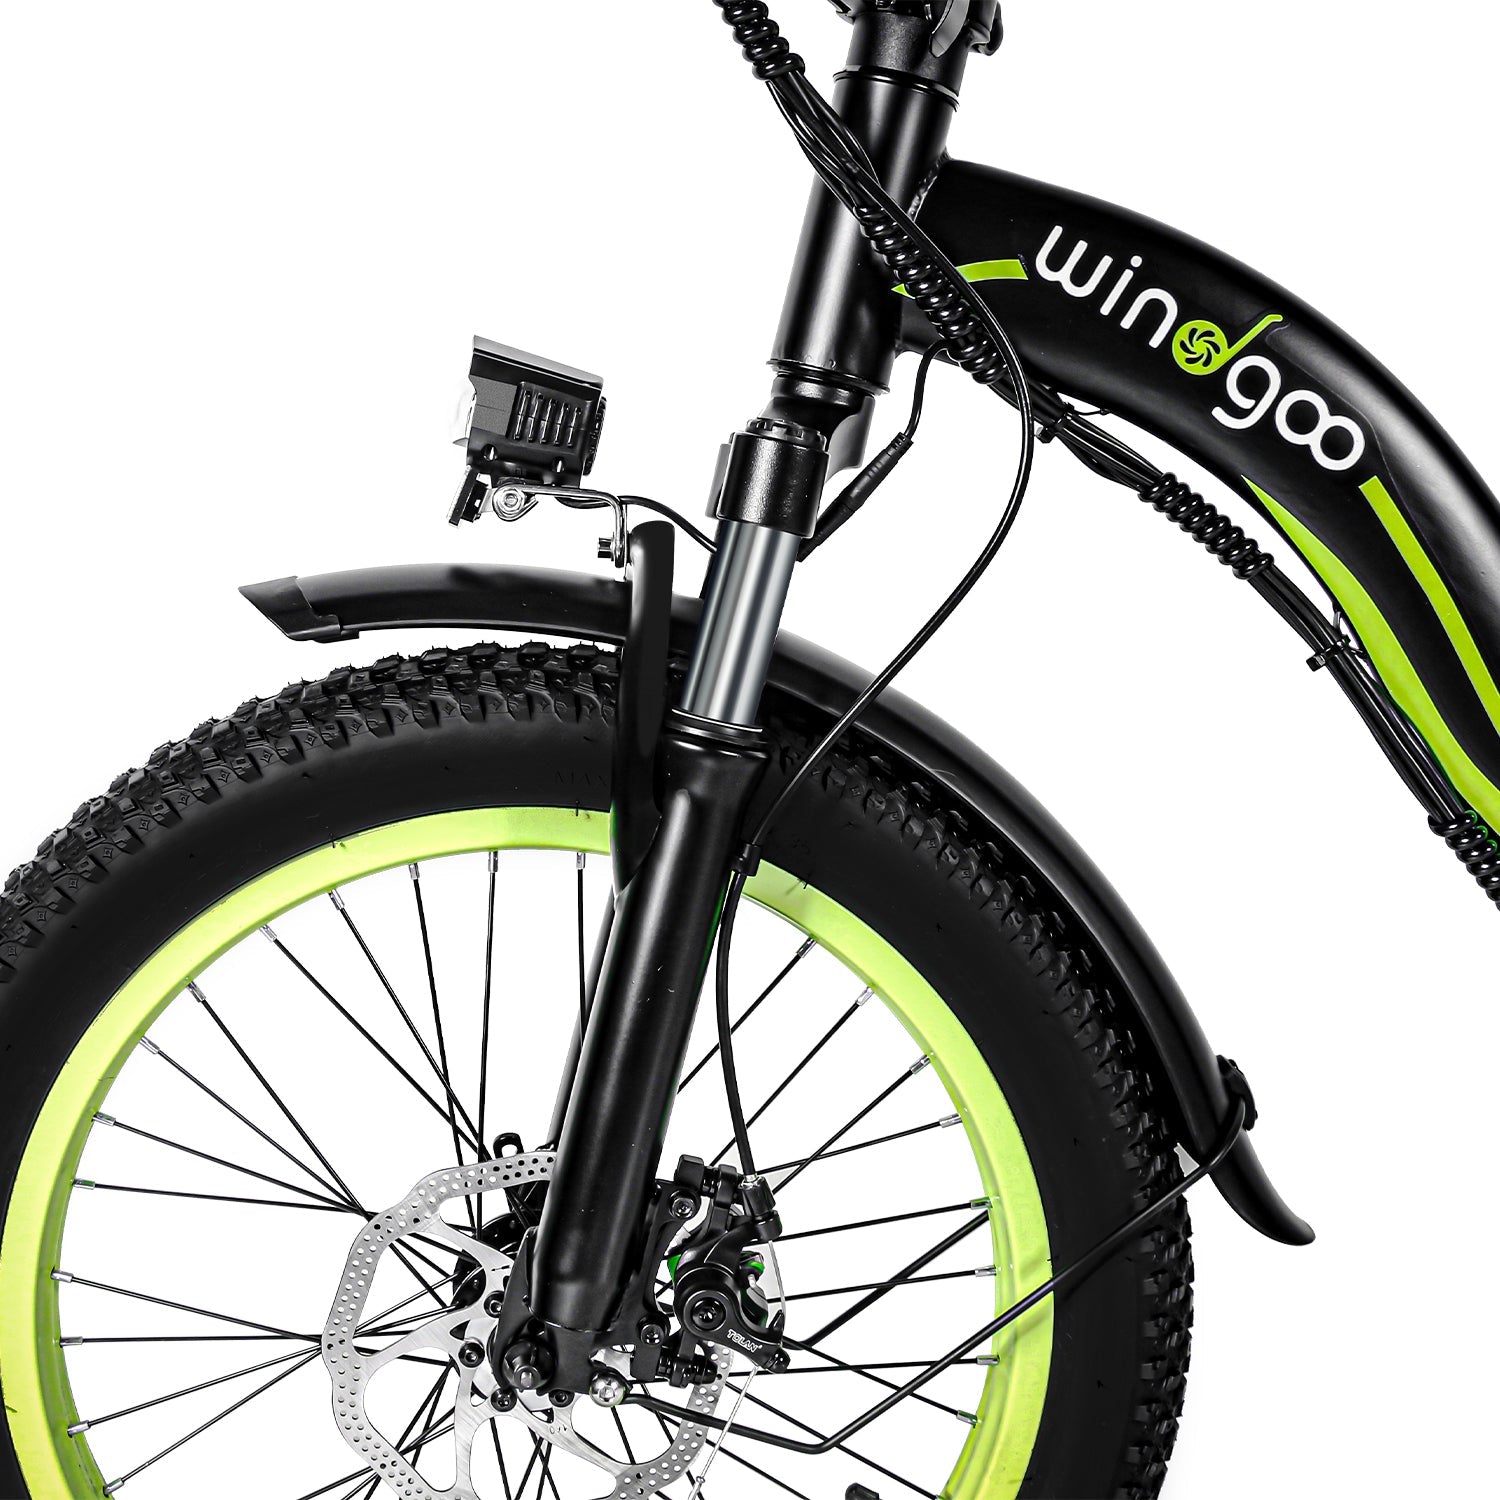 🌿SPRING SALE🌿 Windgoo E20 Foldable Portable E-Bike